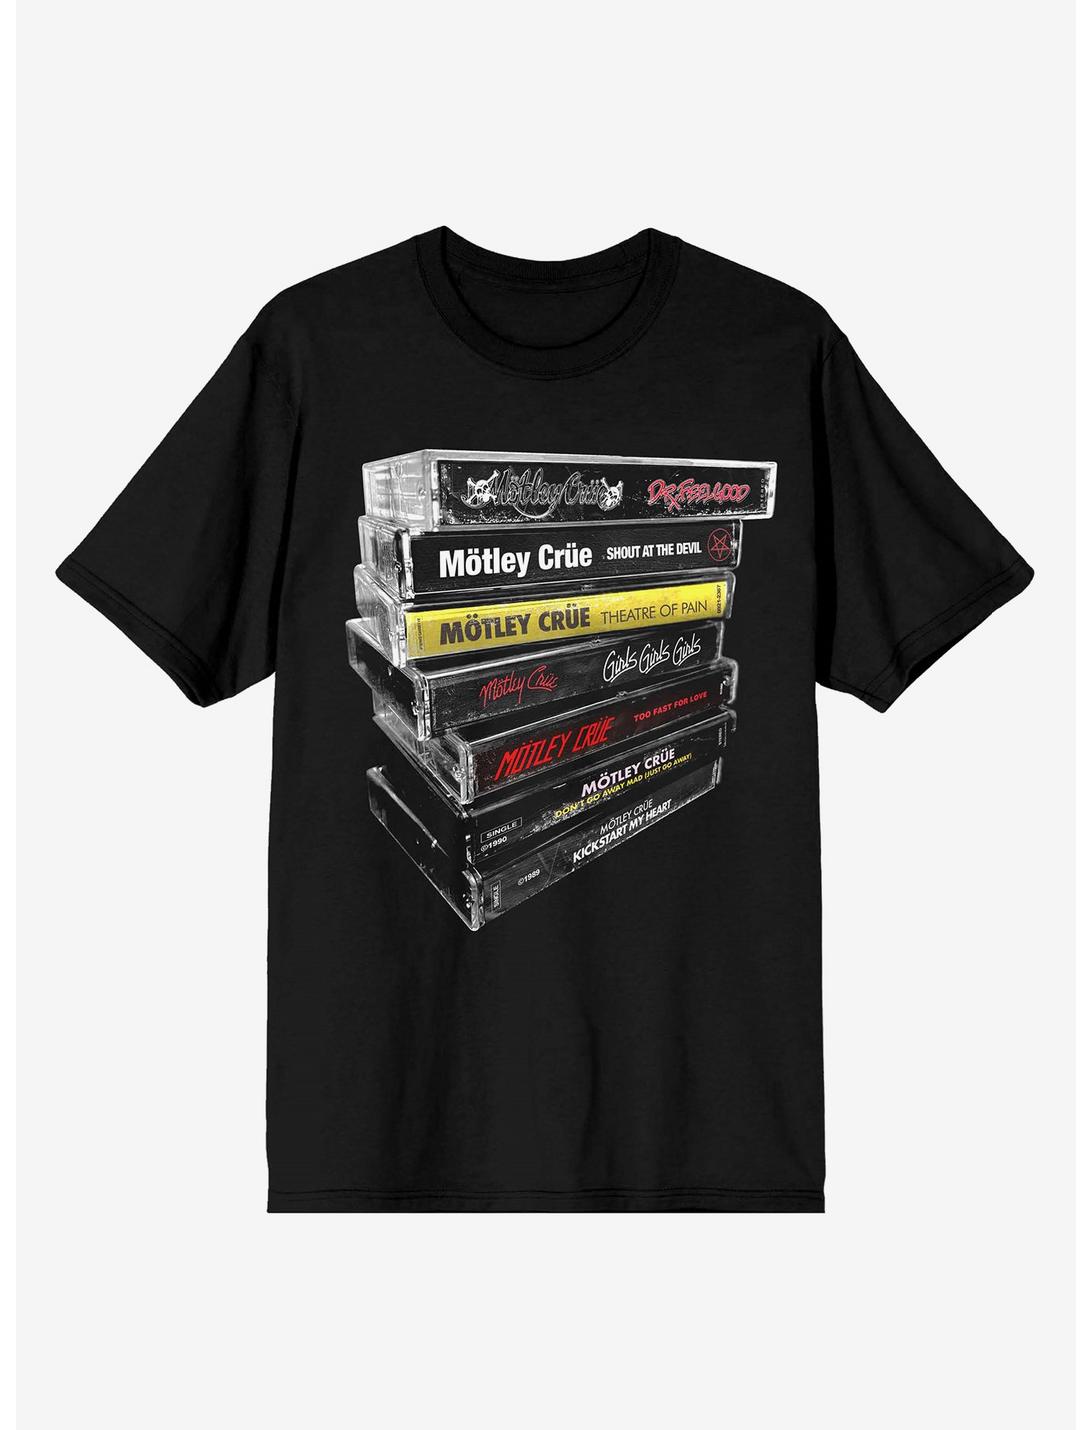 Motley Crue Cassette Tapes T-Shirt, BLACK, hi-res